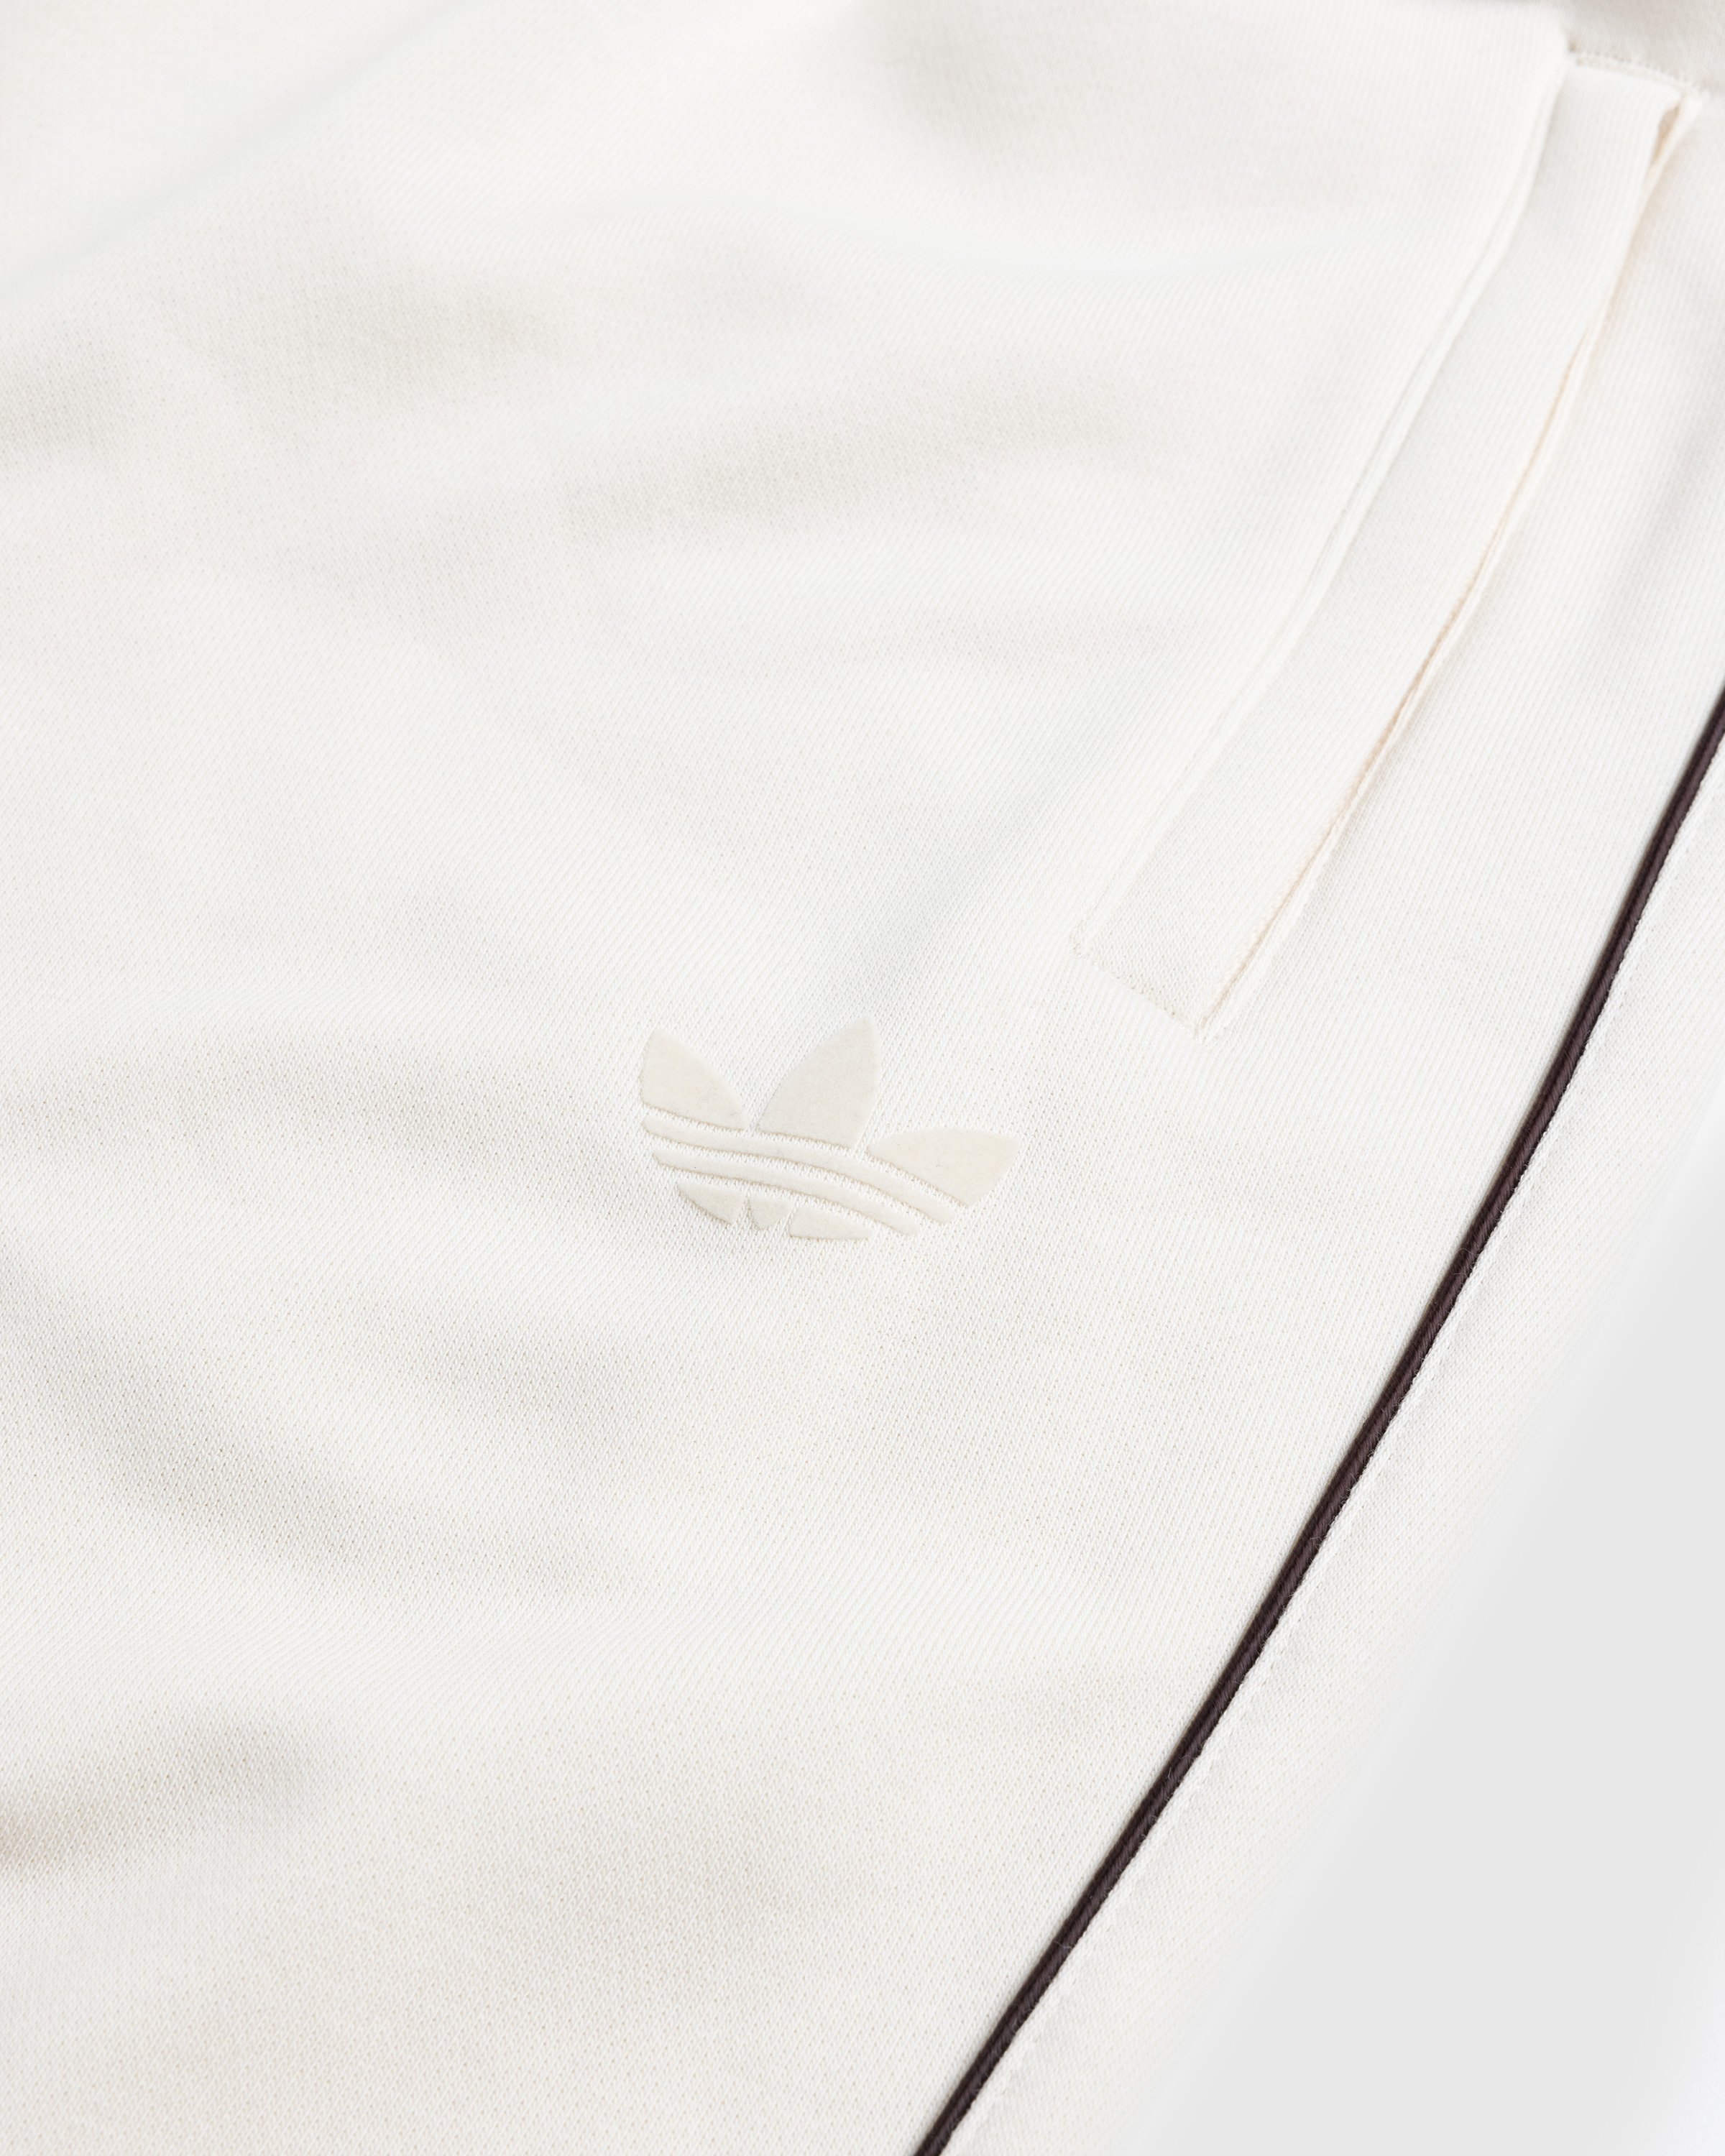 Adidas x Wales Bonner - Sweatpants Wonder White - Clothing - Beige - Image 5